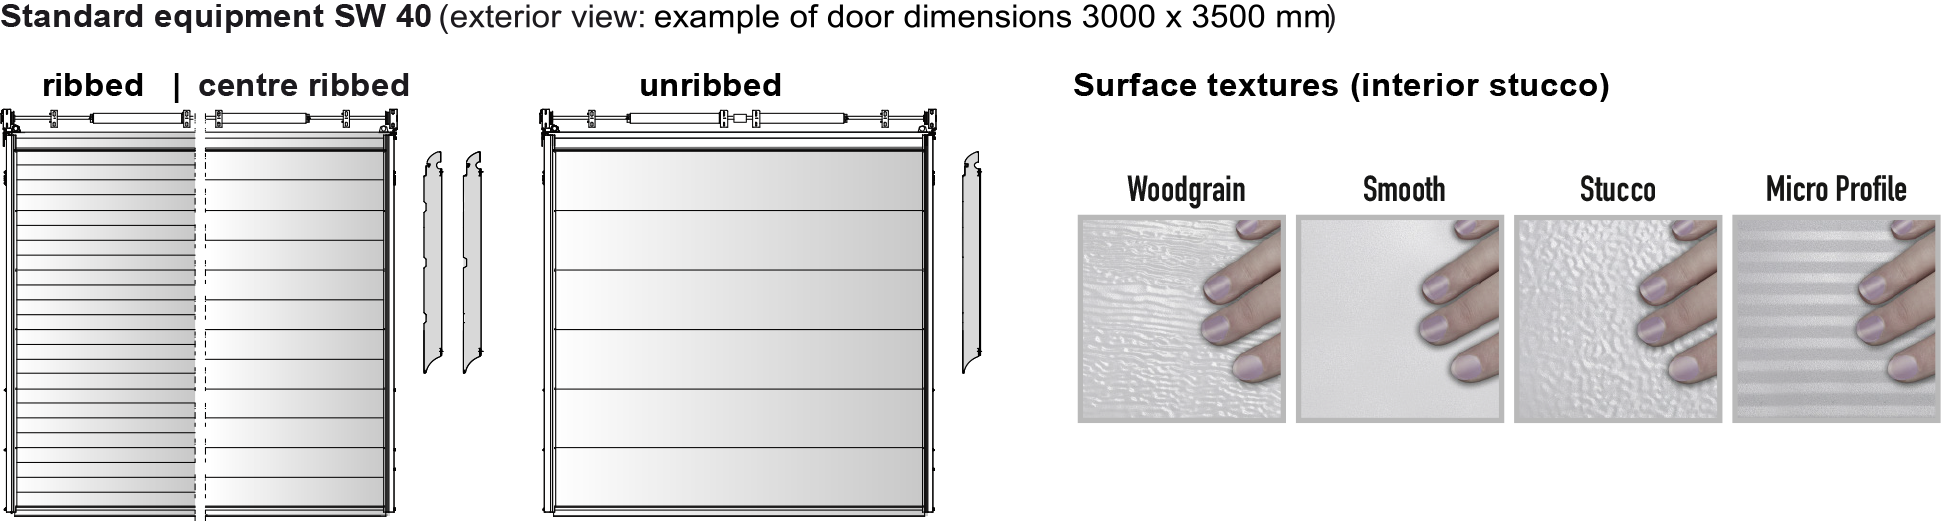 Door design and finish options for Teckentrup sectional doors